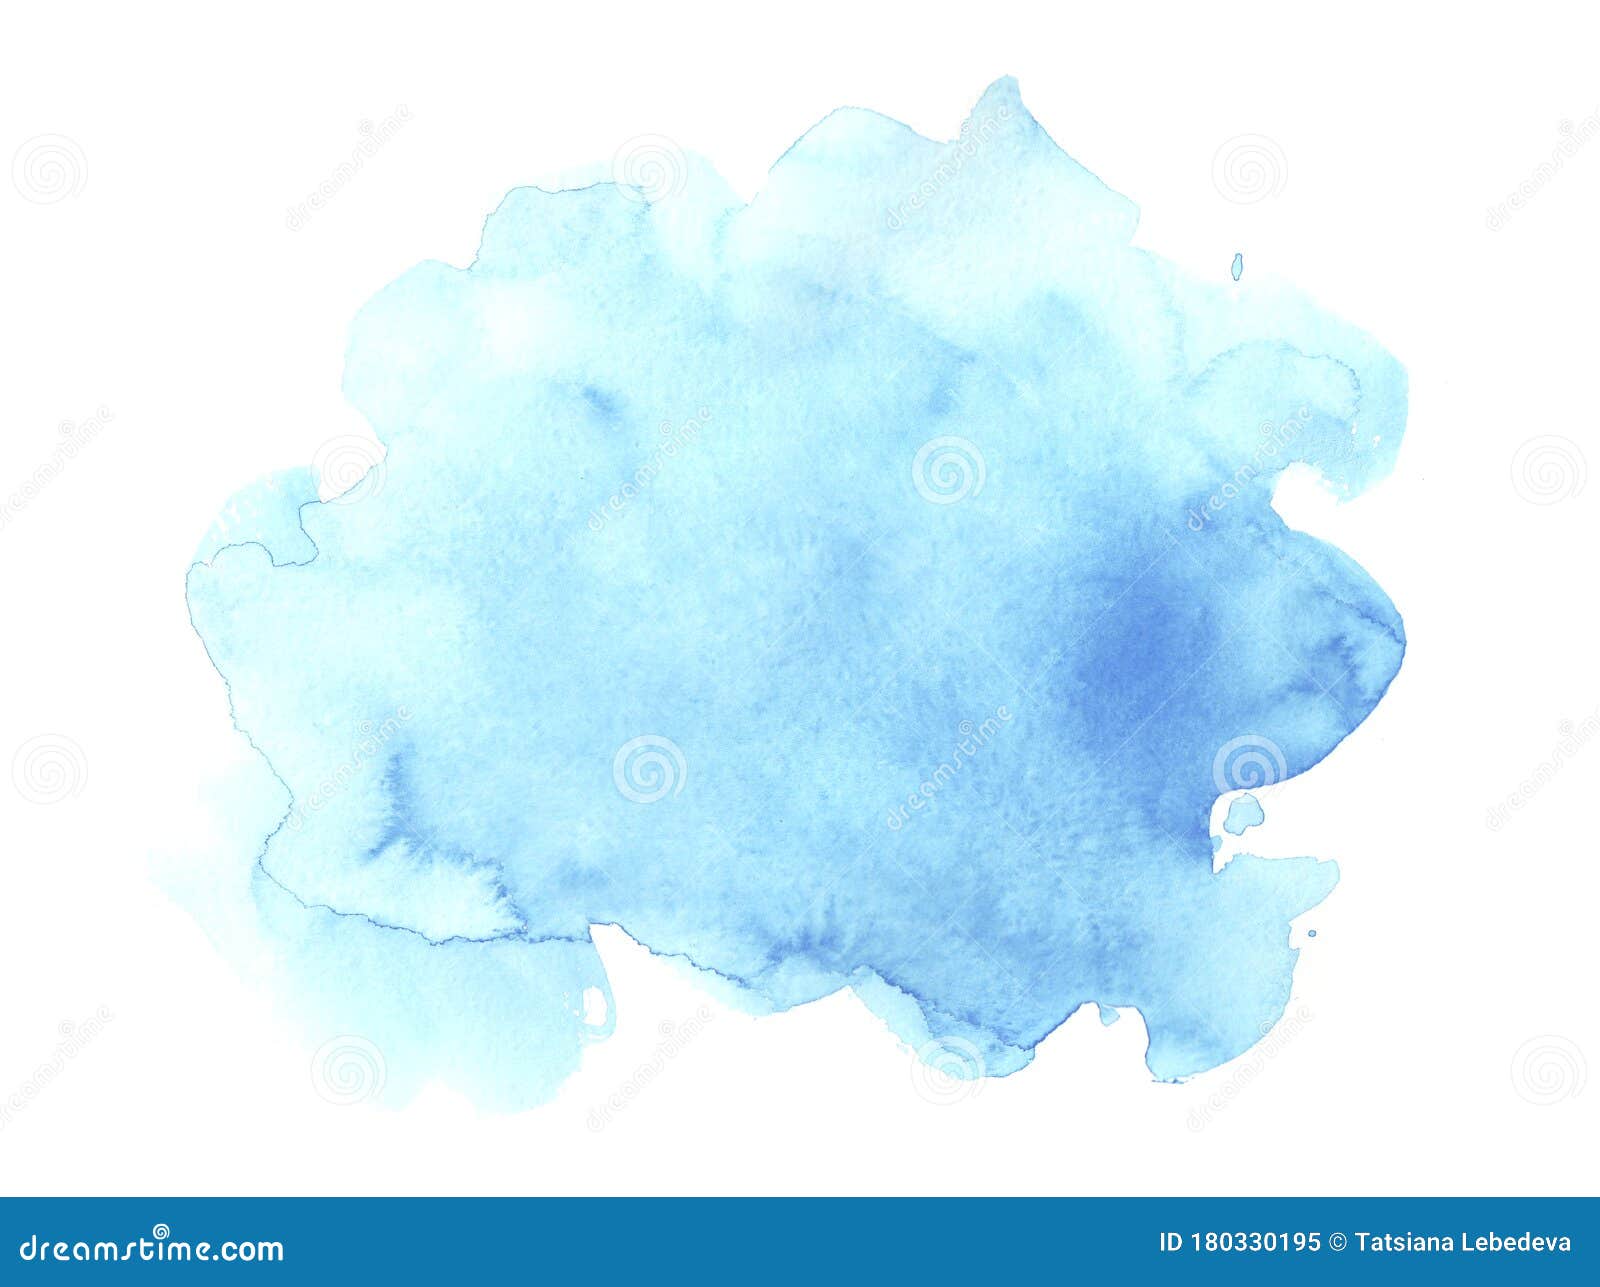 用于卡片 壁纸 打印的白色背景上的抽象淡蓝色水彩画抽象的水彩天空彩手库存例证 插画包括有格朗基 吹动